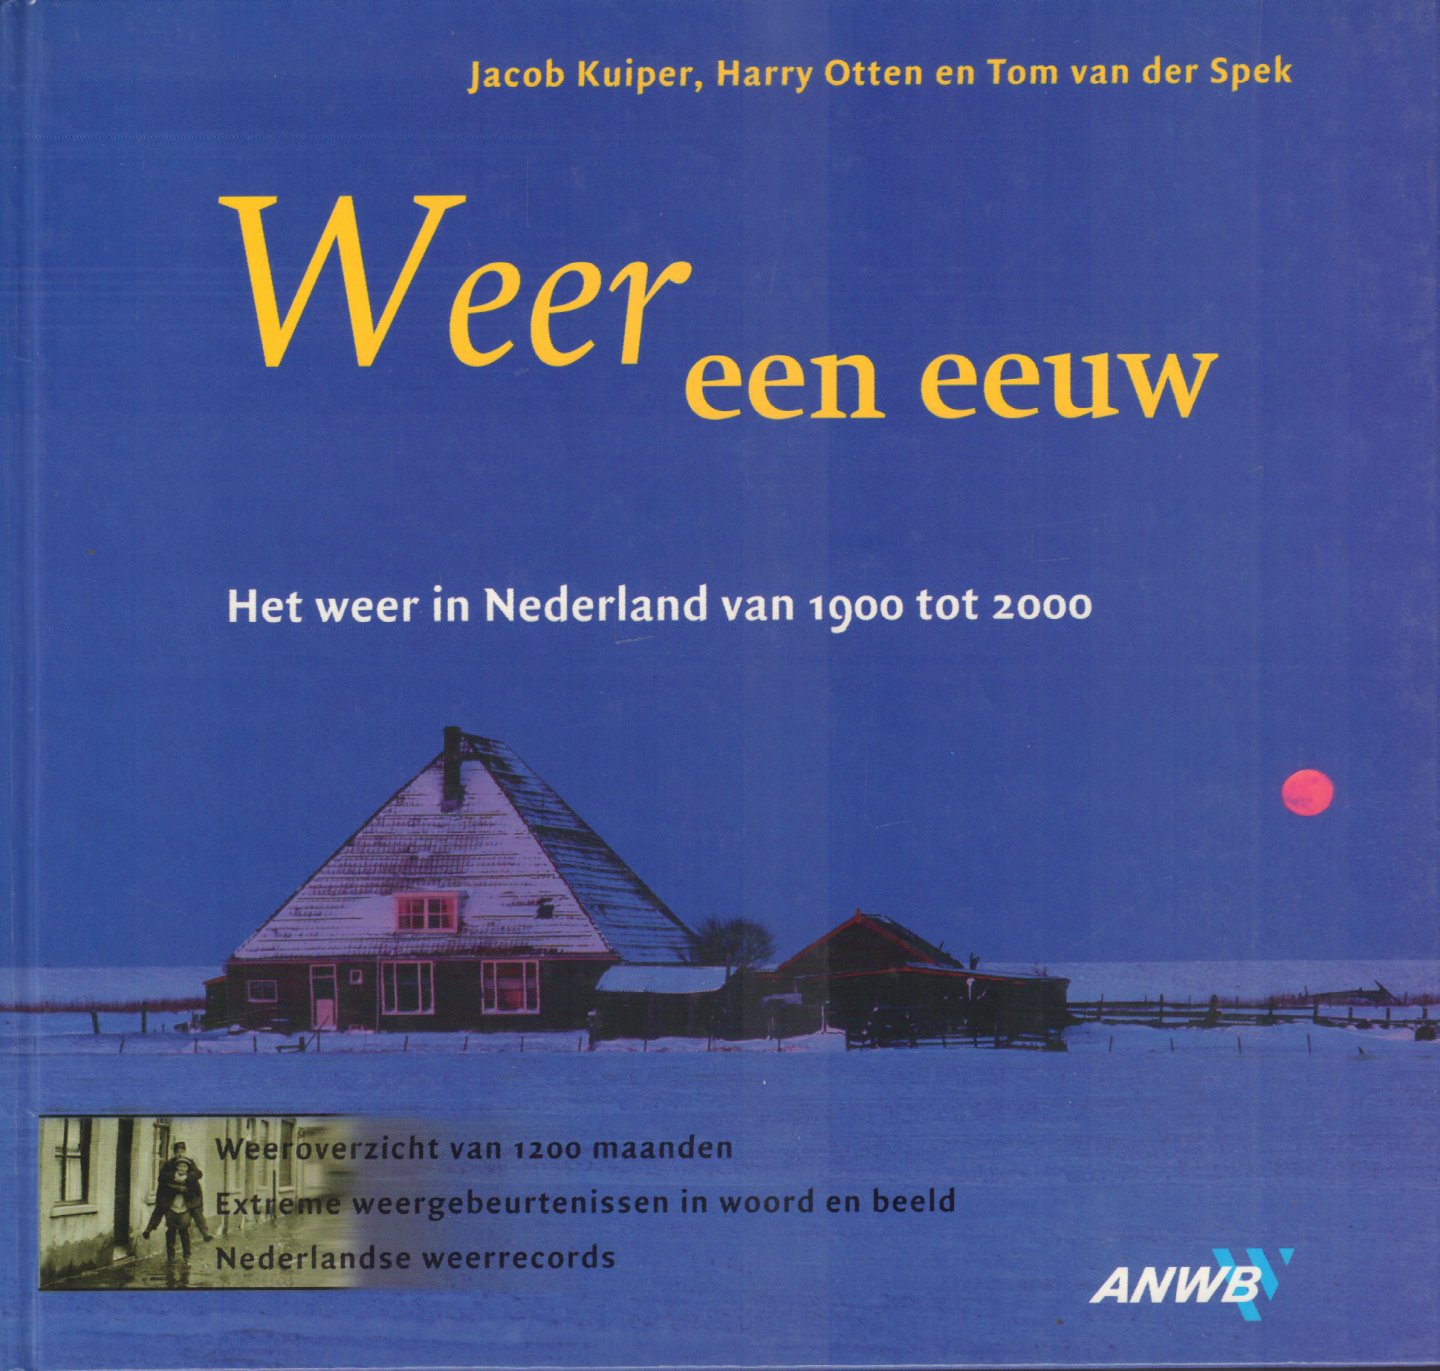 Kuiper, Jacob, Harry Otten en Tom van der Spek - Weer Een Eeuw (Het weer in Nederland van 1900 tot 2000), 239 pag. hardcover, gave staat